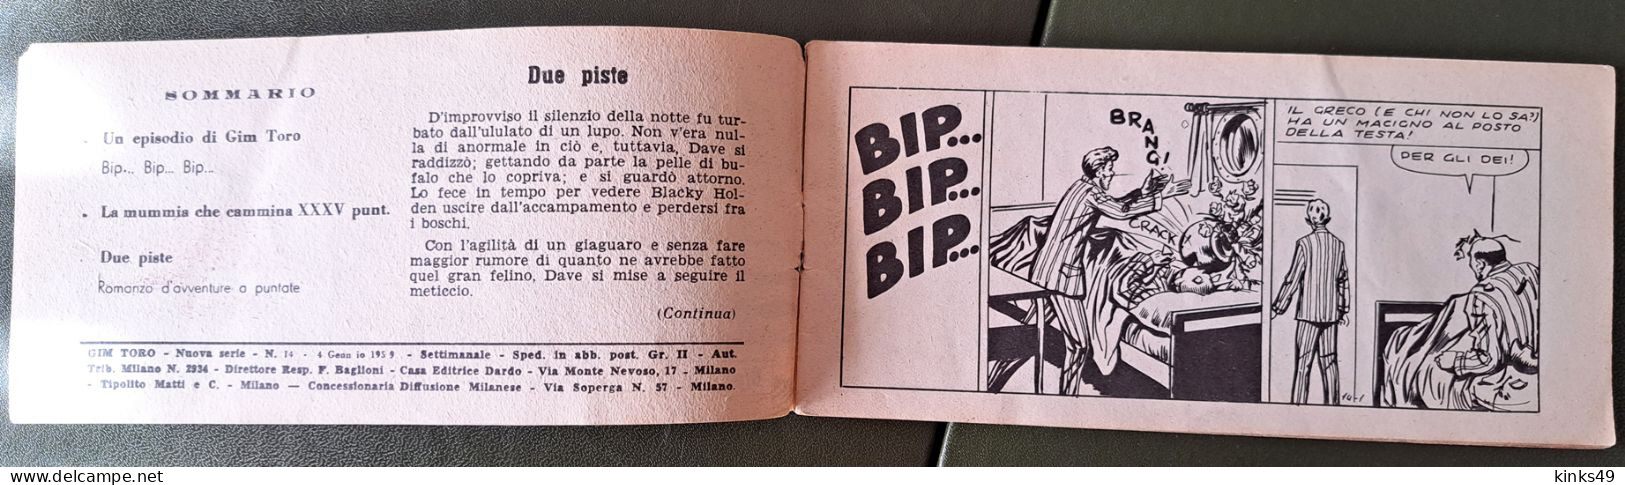 M228> GIM TORO "Bip... Bip... Bip..." Striscia DARDO N° 14 Del 4 GENNAIO 1959 - Eerste Uitgaves